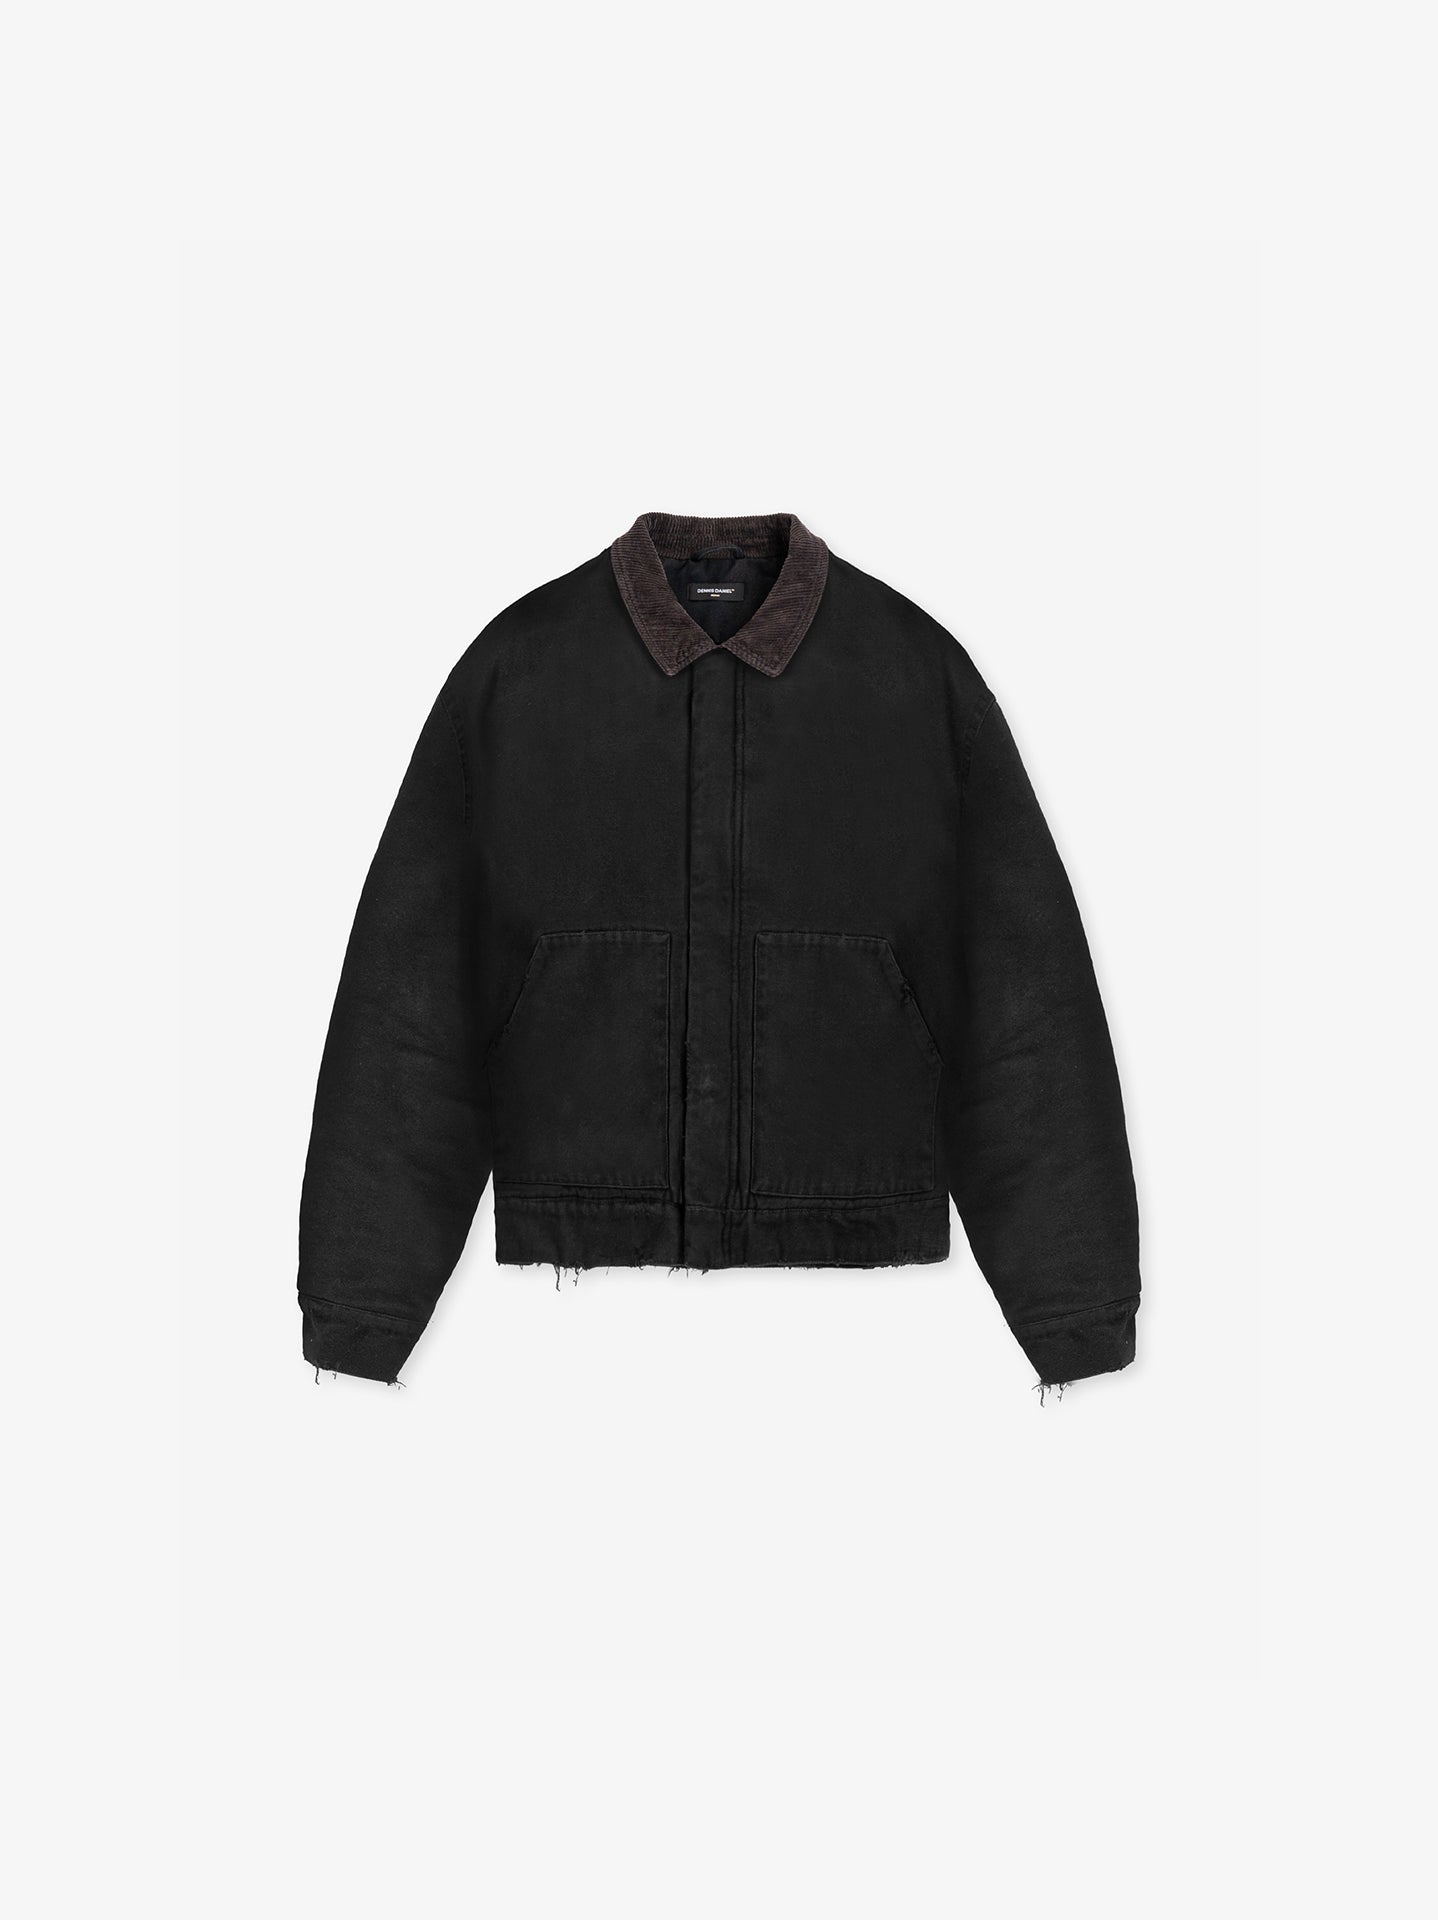 Carpenter Jacket - Vintage Black